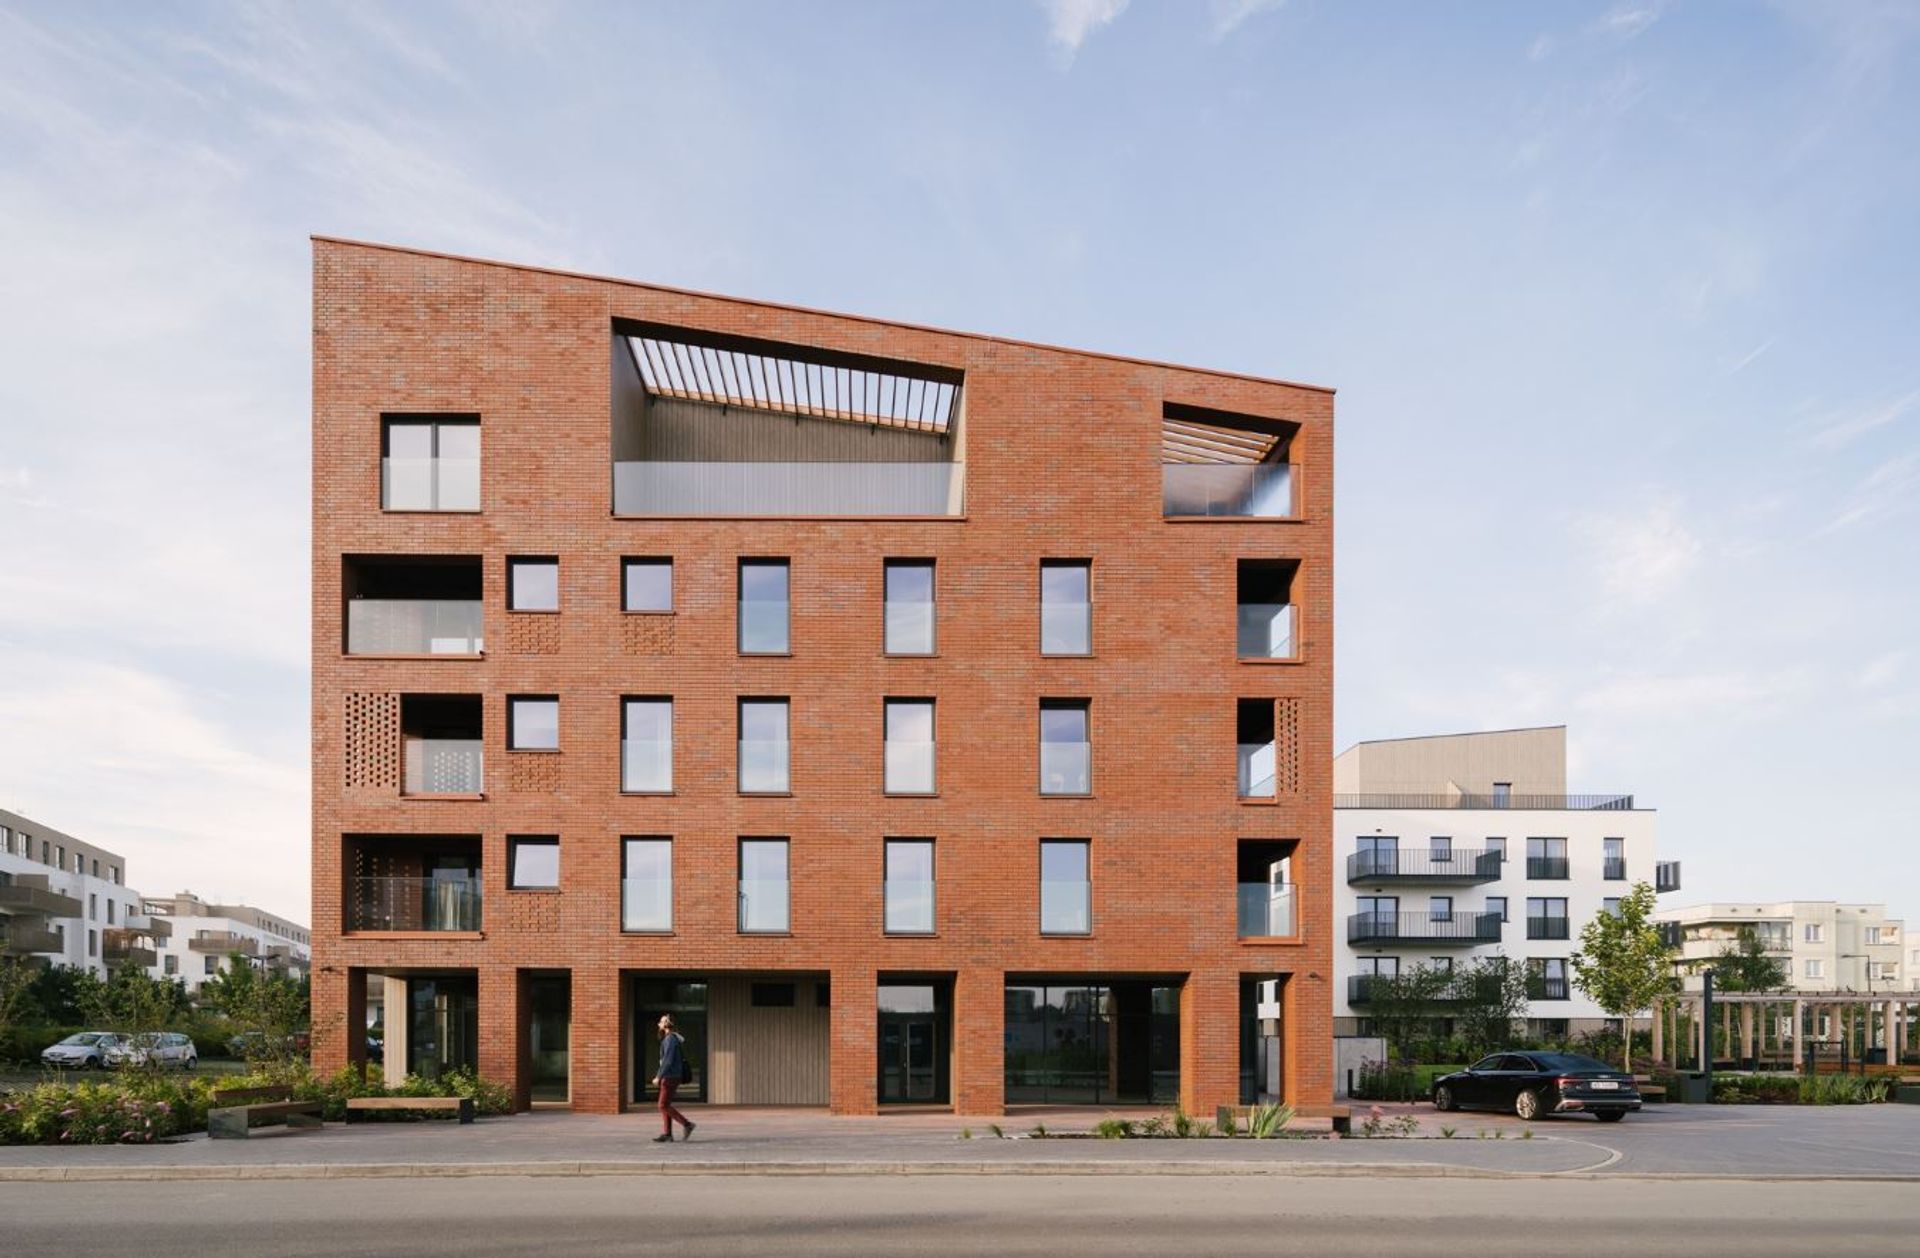 Pierwszy etap inwestycji mieszkaniowej Nordic Bemowo ukończony